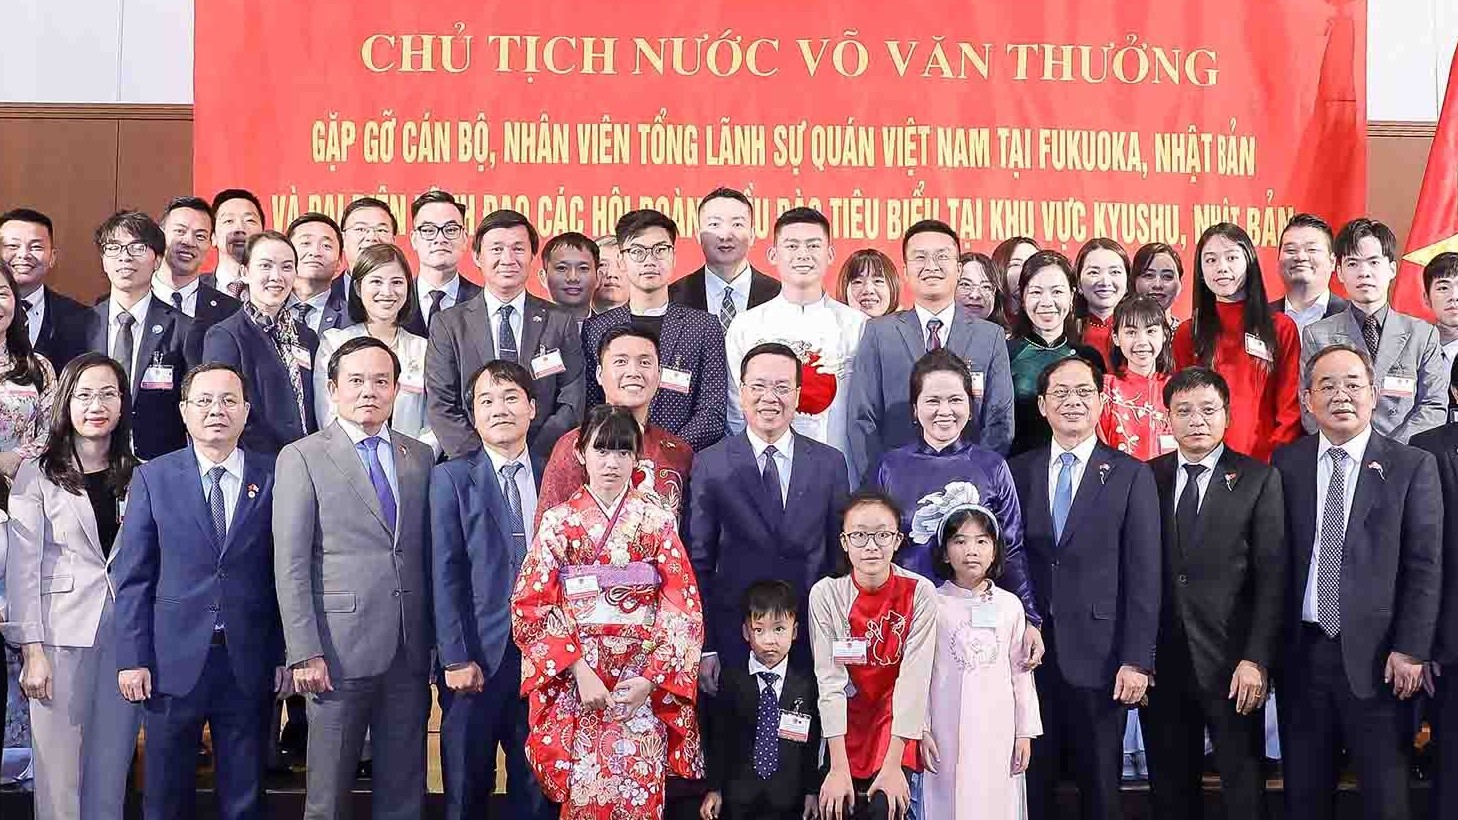 Chủ tịch nước: Mỗi người Việt Nam ở nước ngoài cần tiếp tục giữ gìn bản sắc văn hoá dân tộc